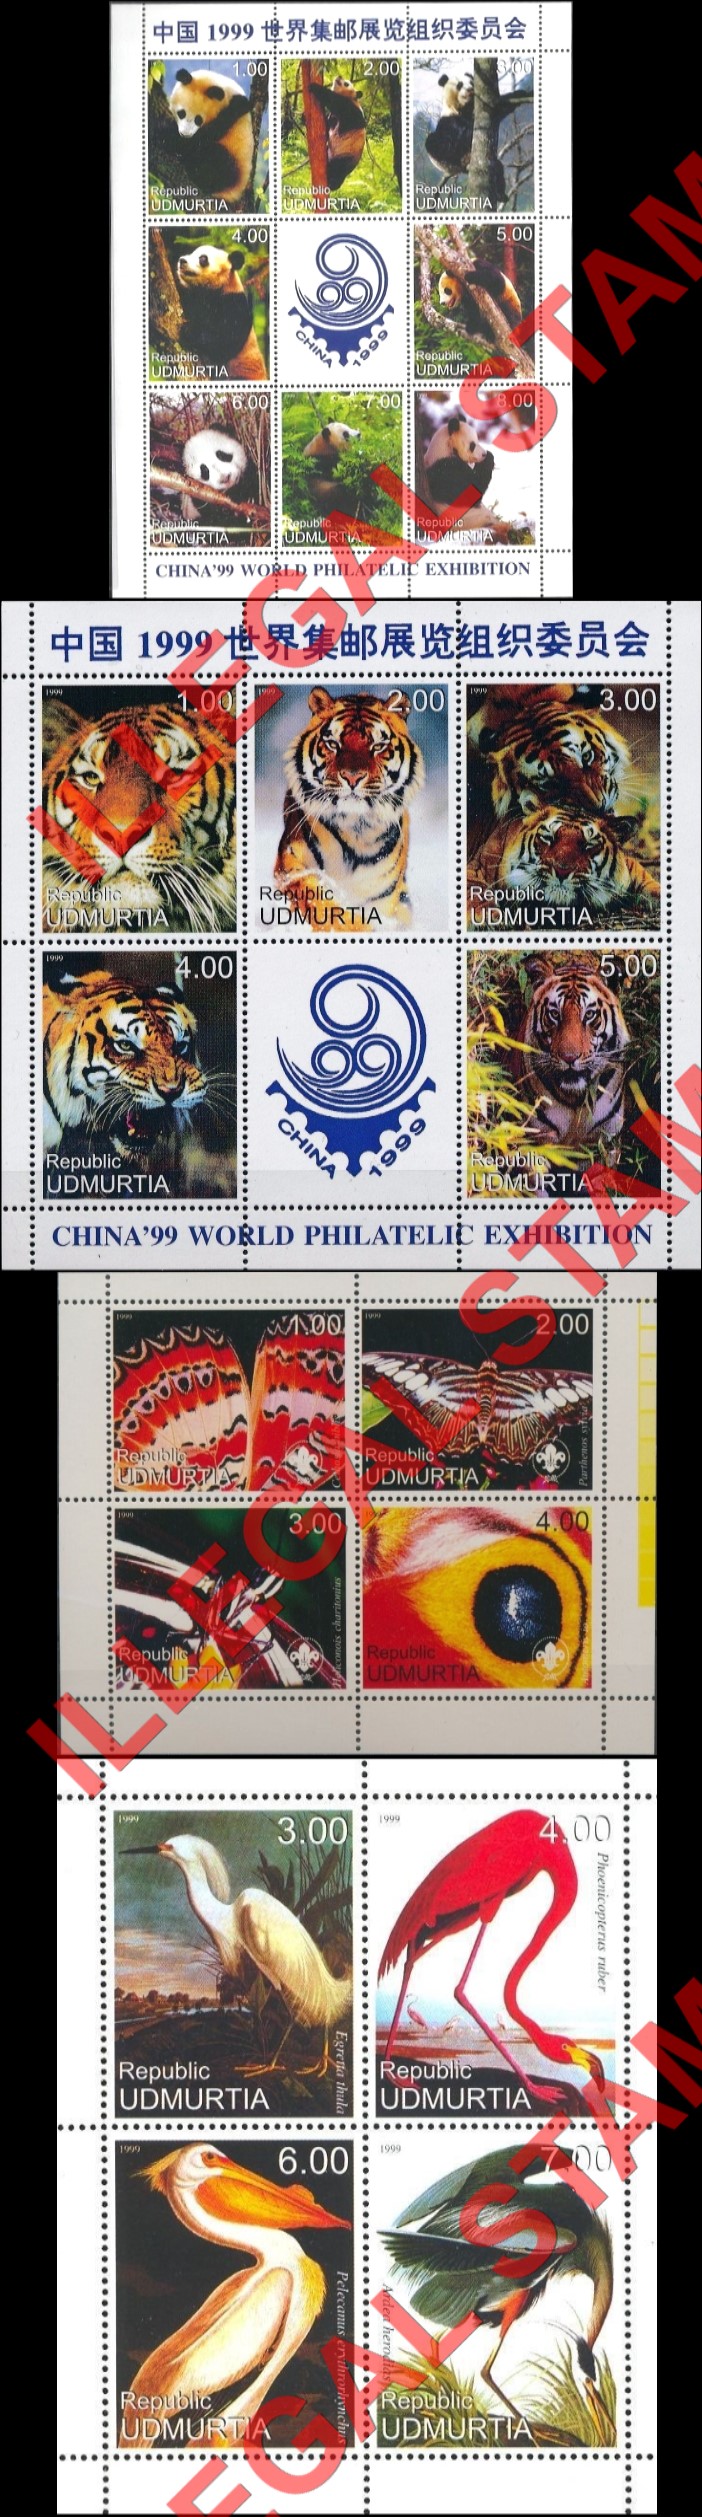 Republic of Udmurtia 1999 Counterfeit Illegal Stamps (Part 1)